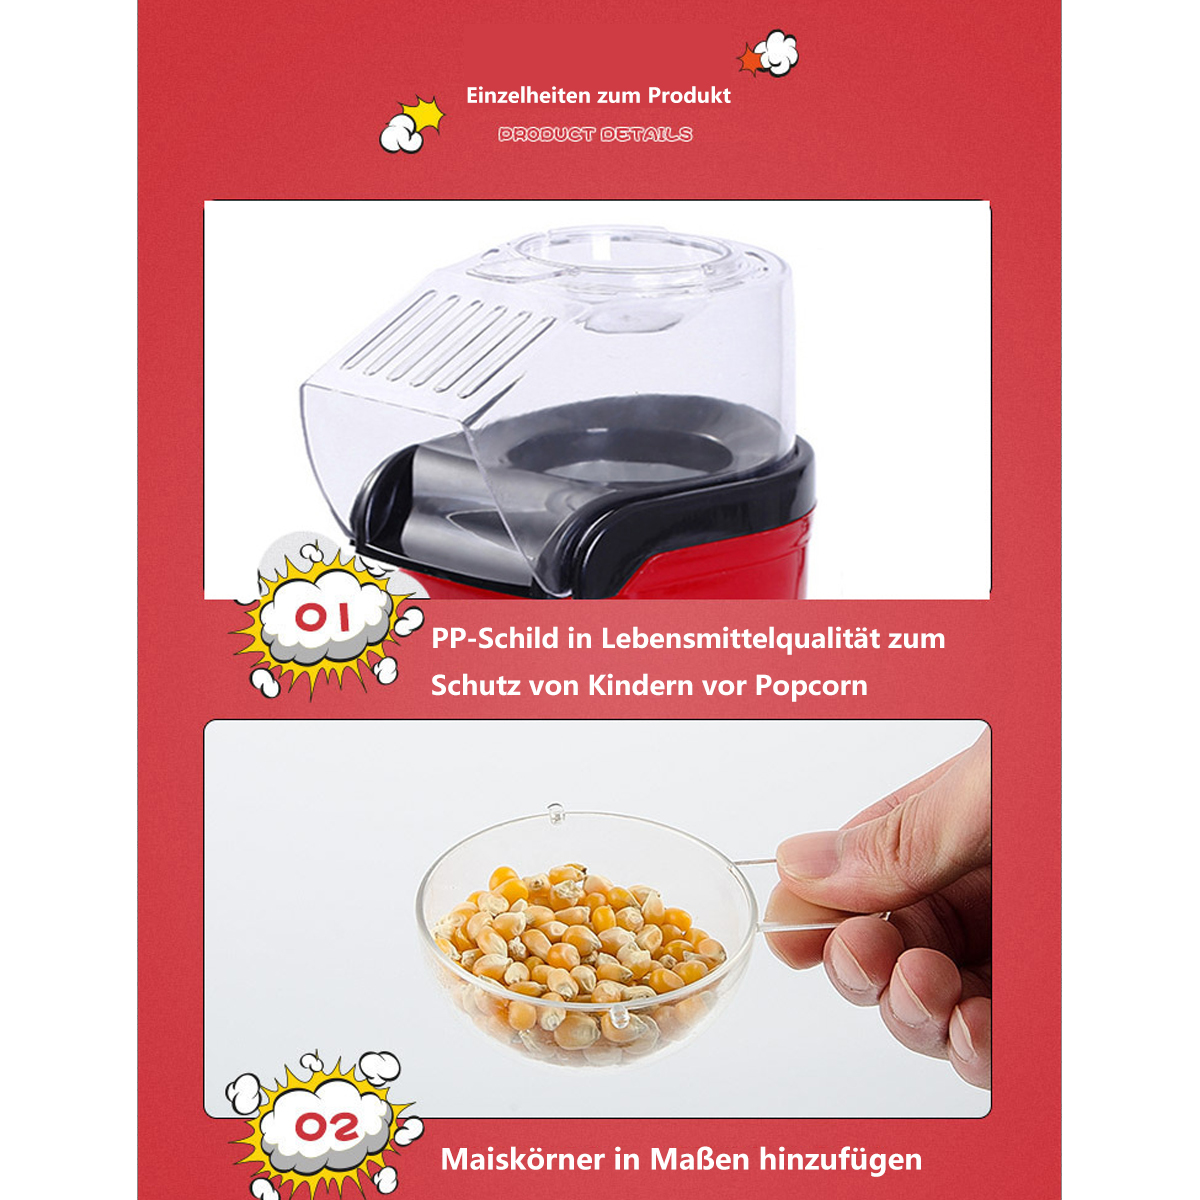 SYNTEK Popcornmaschine Popcornmaker Popcornmaschine weiß elektrische aufblasbare Mini-Popcorn-Wimpelmaschine